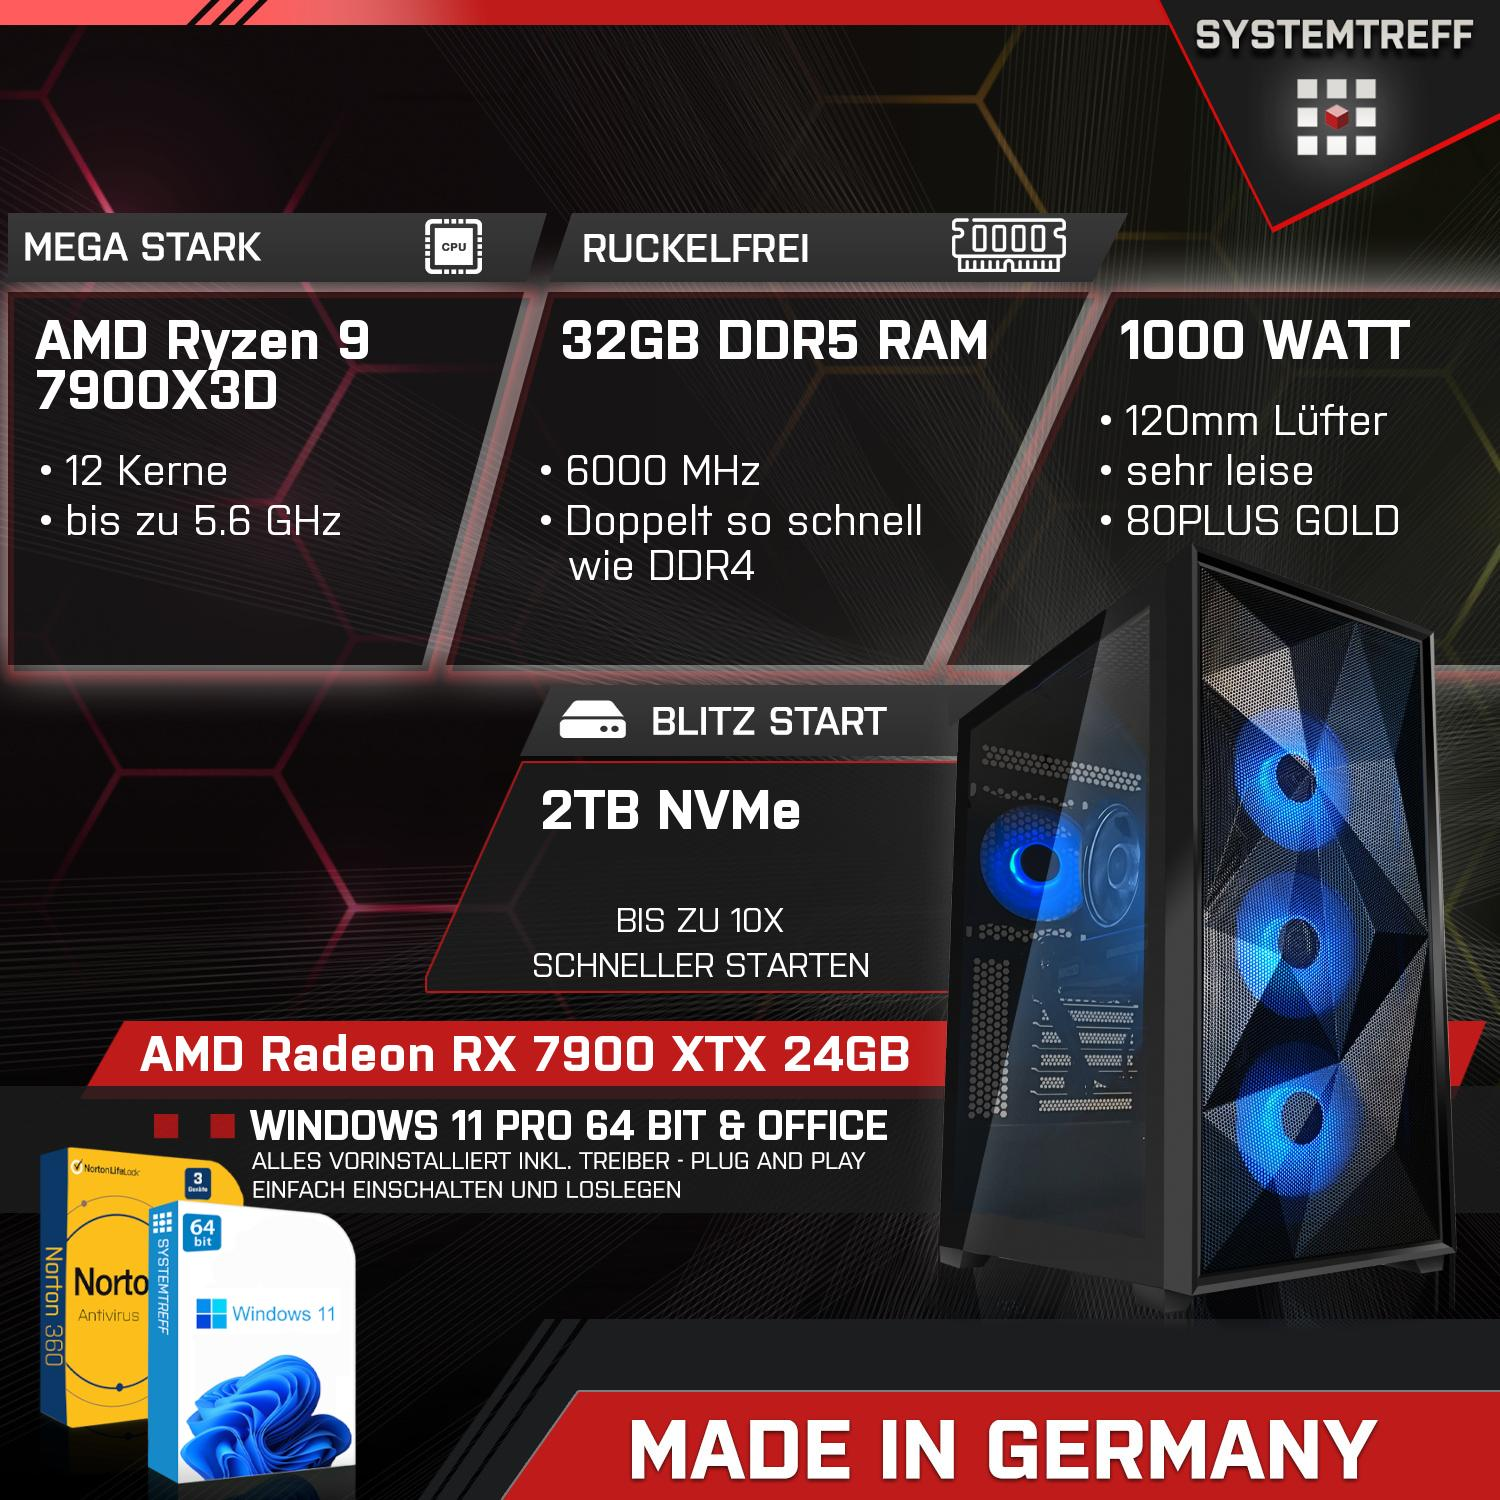 Ryzen Komplett SYSTEMTREFF 24 24GB mSSD, XTX Prozessor, AMD GDDR6, 7900X3D, GB RX Komplett GB 2000 32 9 Radeon 7900X3D RAM, Gaming AMD 7900 mit PC GB